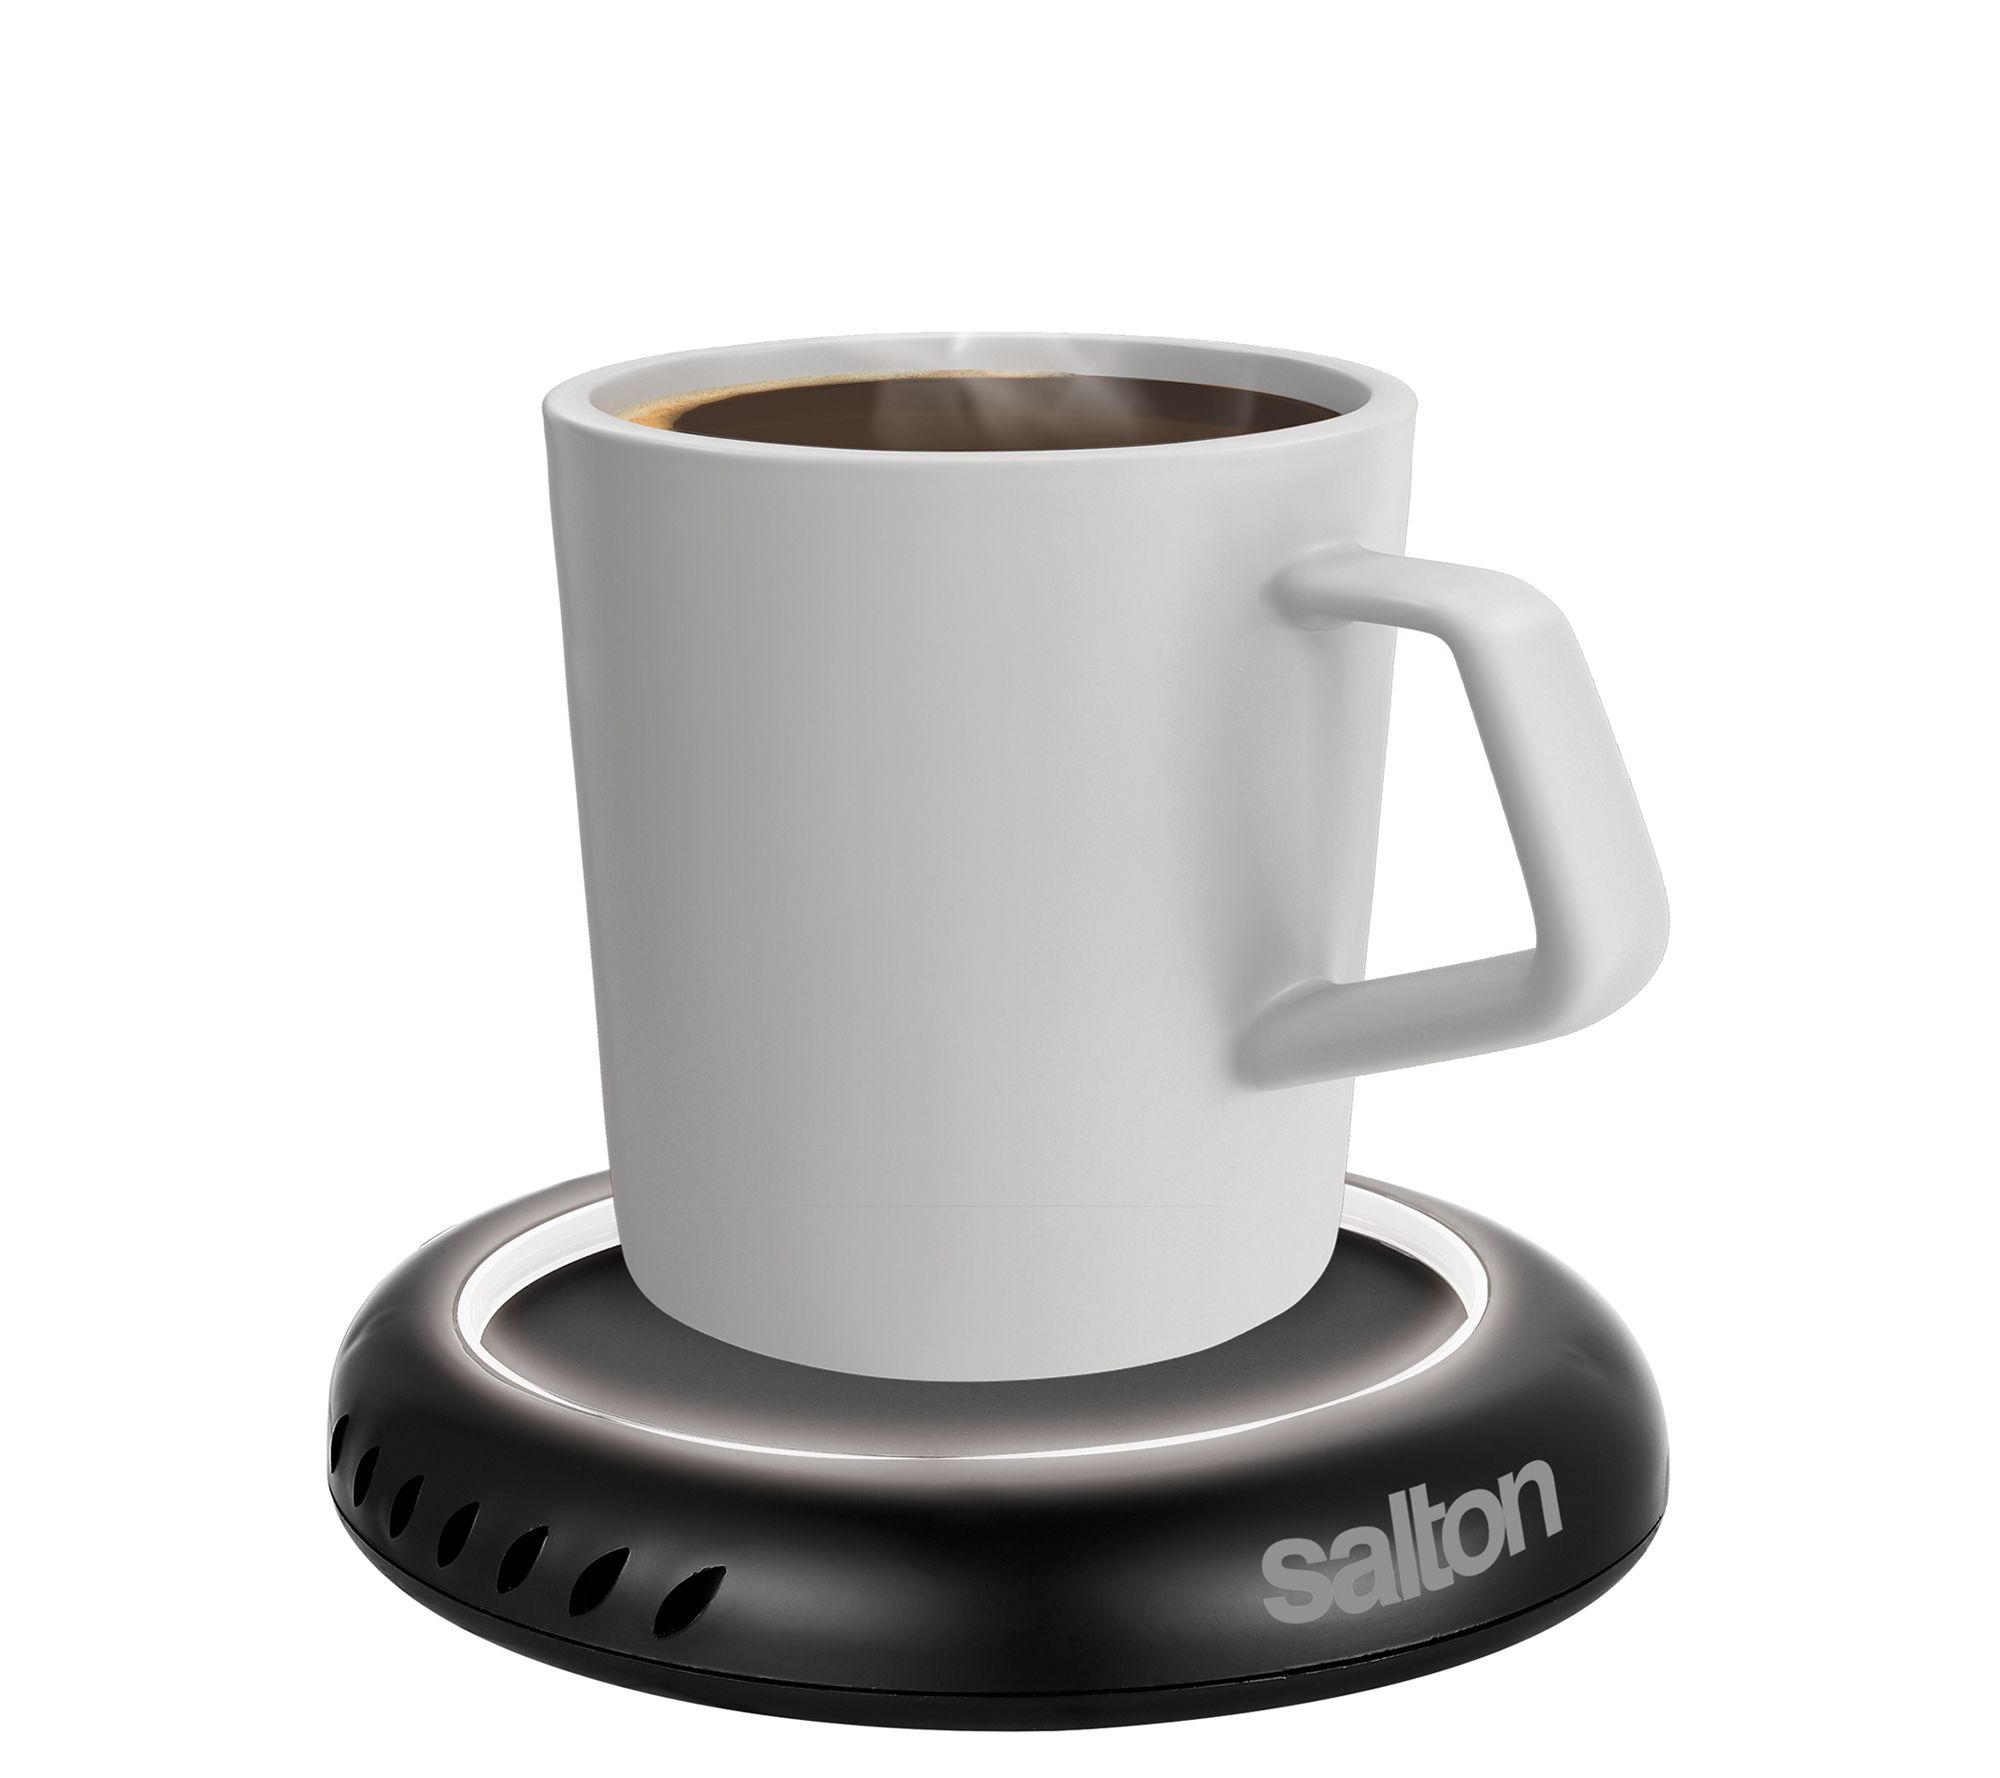 Cordless Coffee Mug Warmer Portable Keep Drink Warm Heating